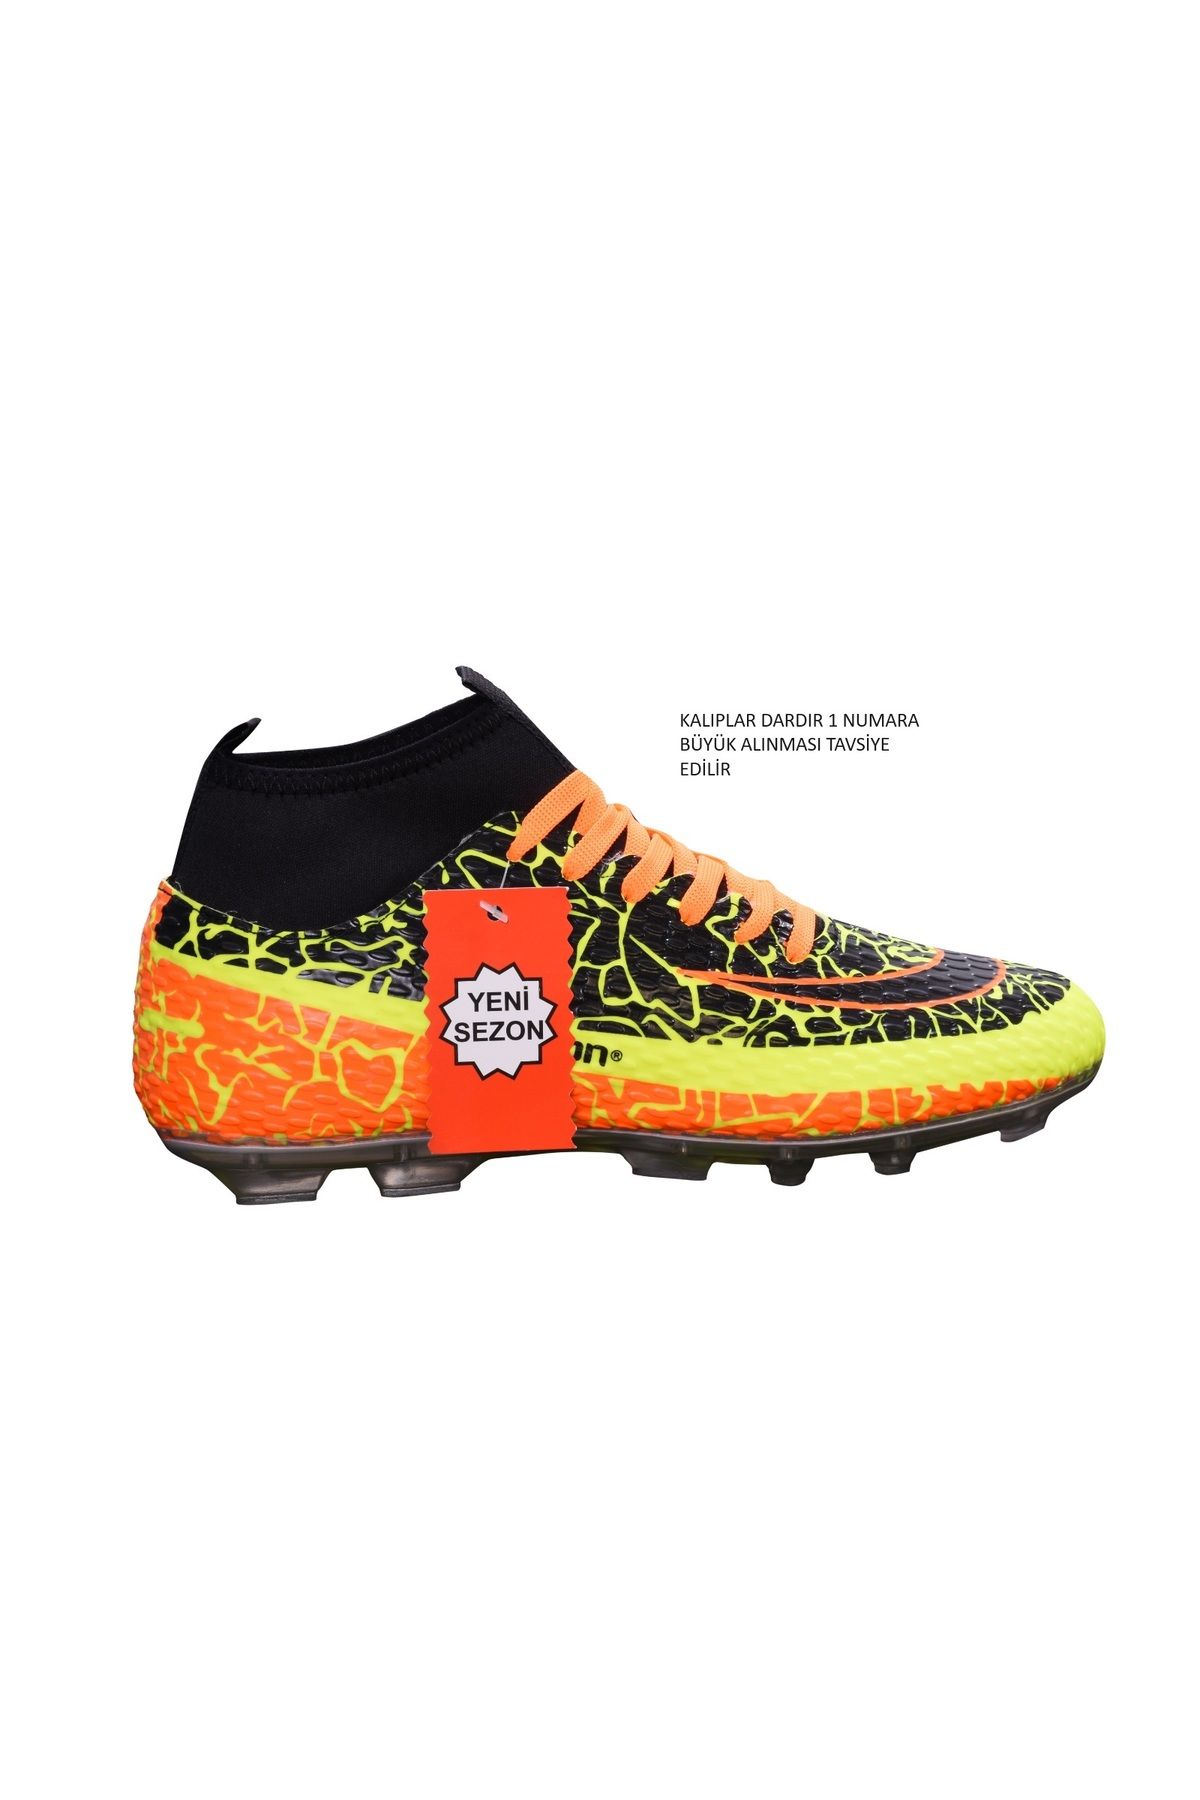 Lion Super Mercury Bilekli Çoraplı Krampon Futbol Ayakkabısı LİON-1071-KR TYCH239YHN169659927272417